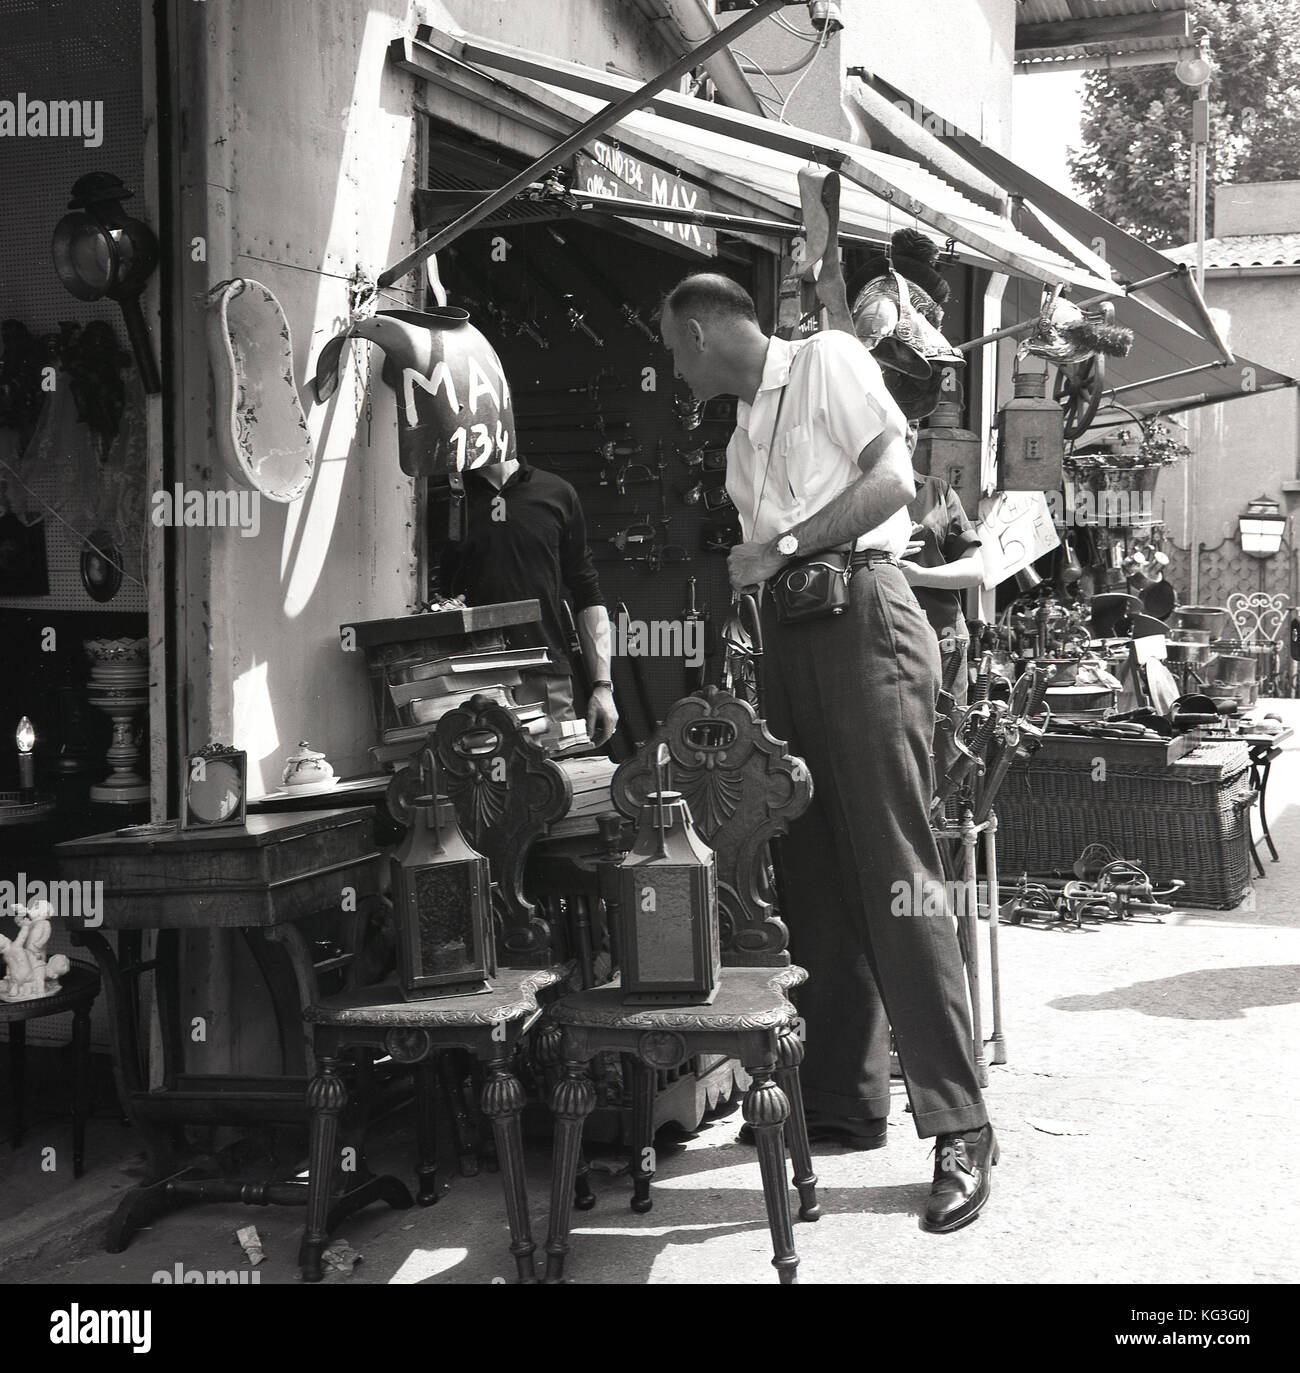 1960s, historique, un touriste mâle avec appareil-photo parcourt un stand rempli de meubles, de décoration et d'autres antiquités au célèbre marché aux puces les Puces à Paris. Banque D'Images